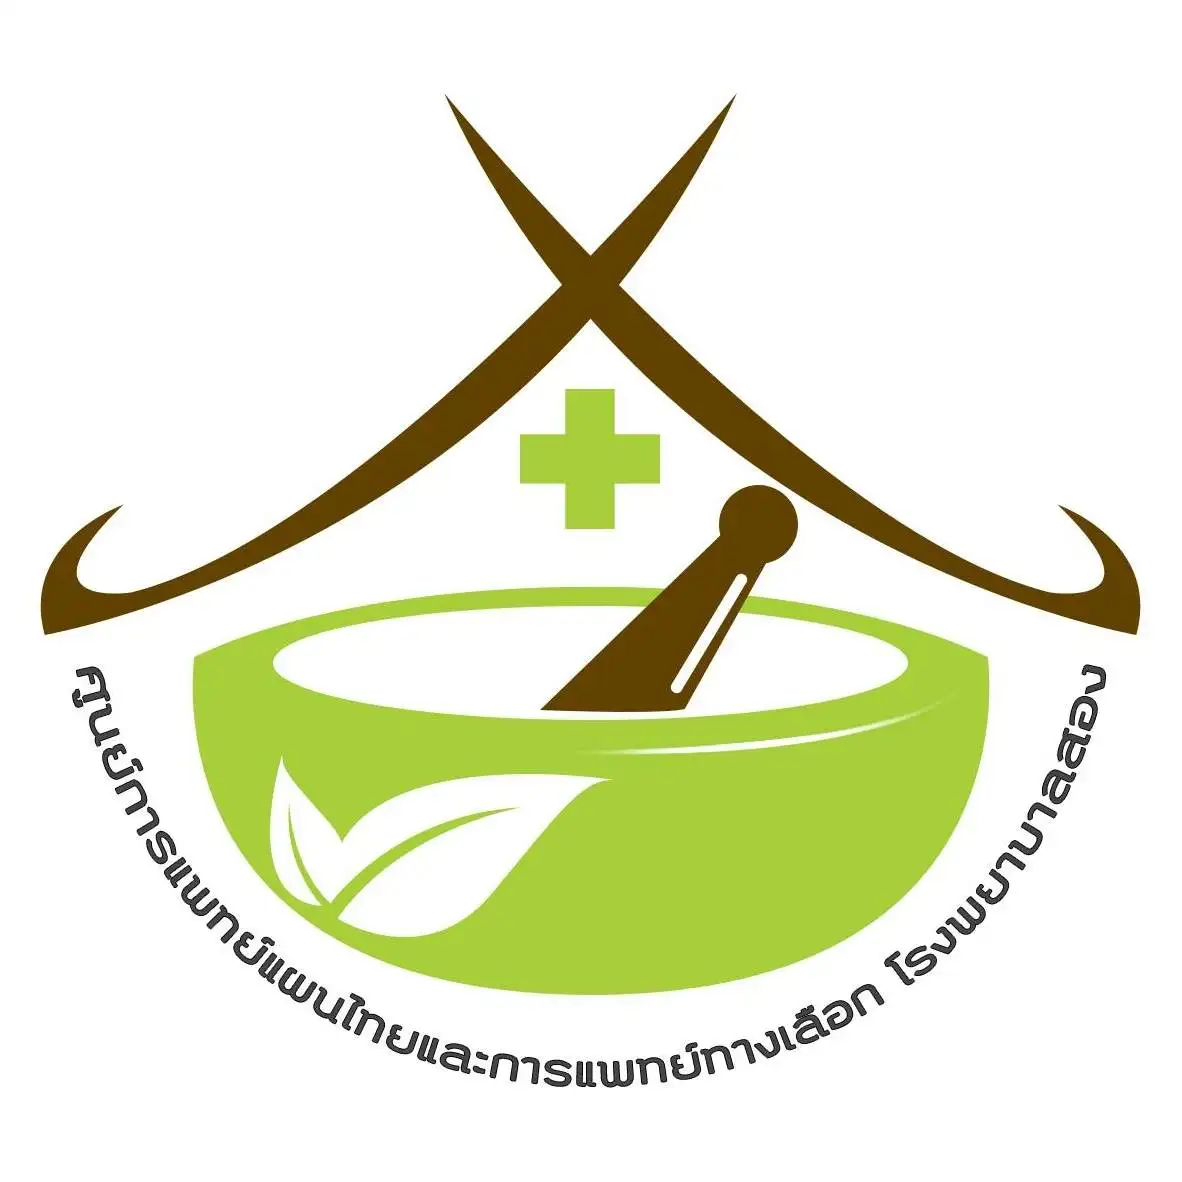 ศูนย์การแพทย์แผนไทยและการแพทย์ทางเลือก โรงพยาบาลสอง จ.แพร่ HealthServ.net